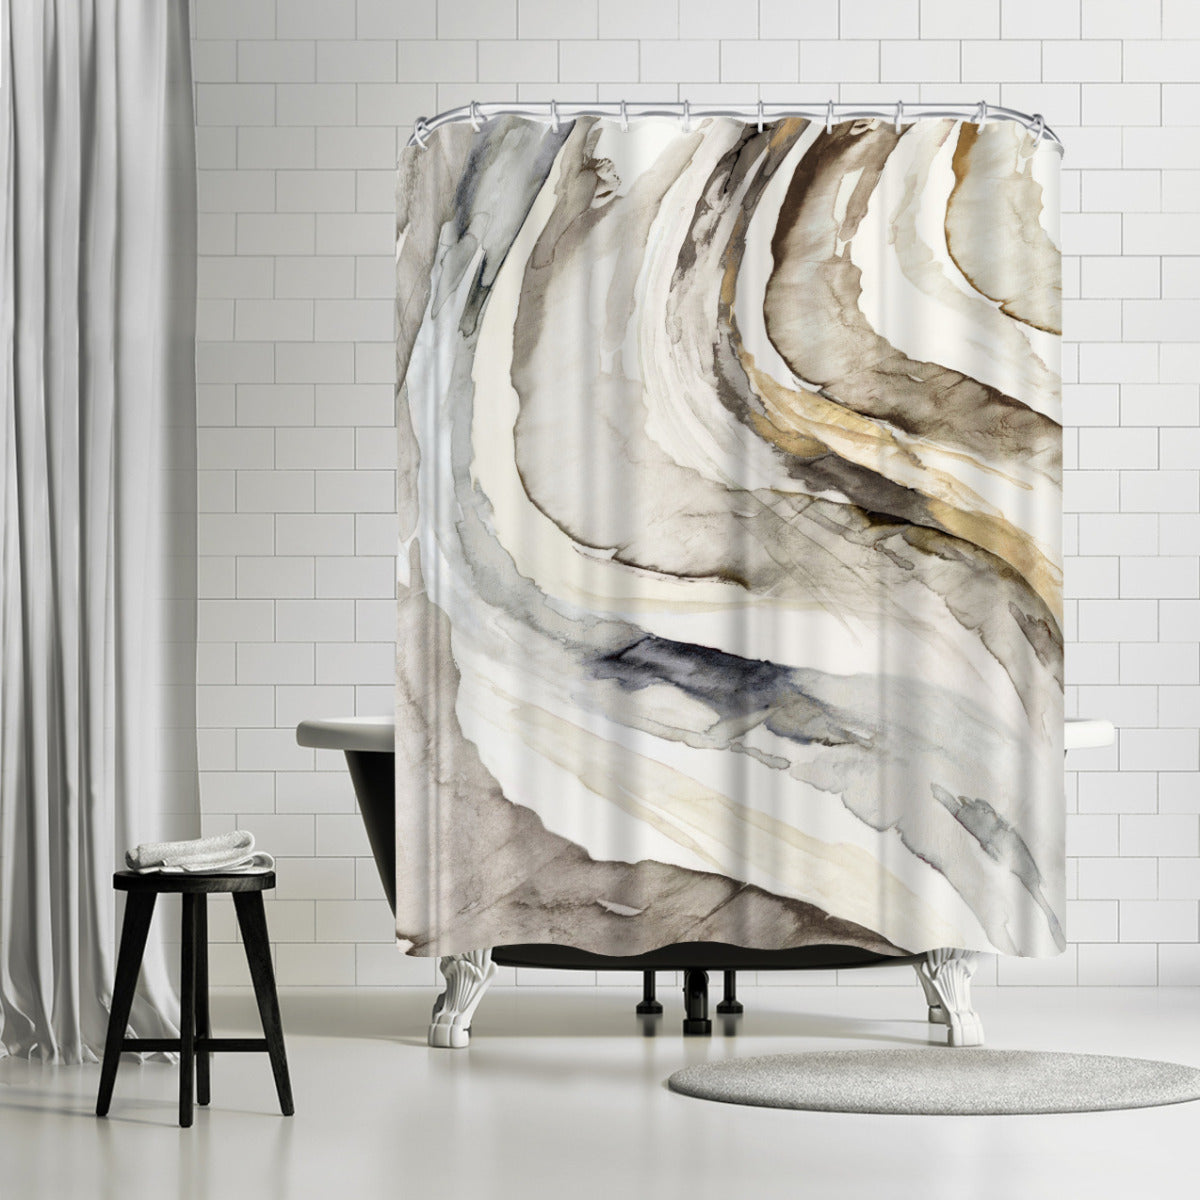 Gulf by Pi Creative Art - Shower Curtain, Shower Curtain, 74" X 71"